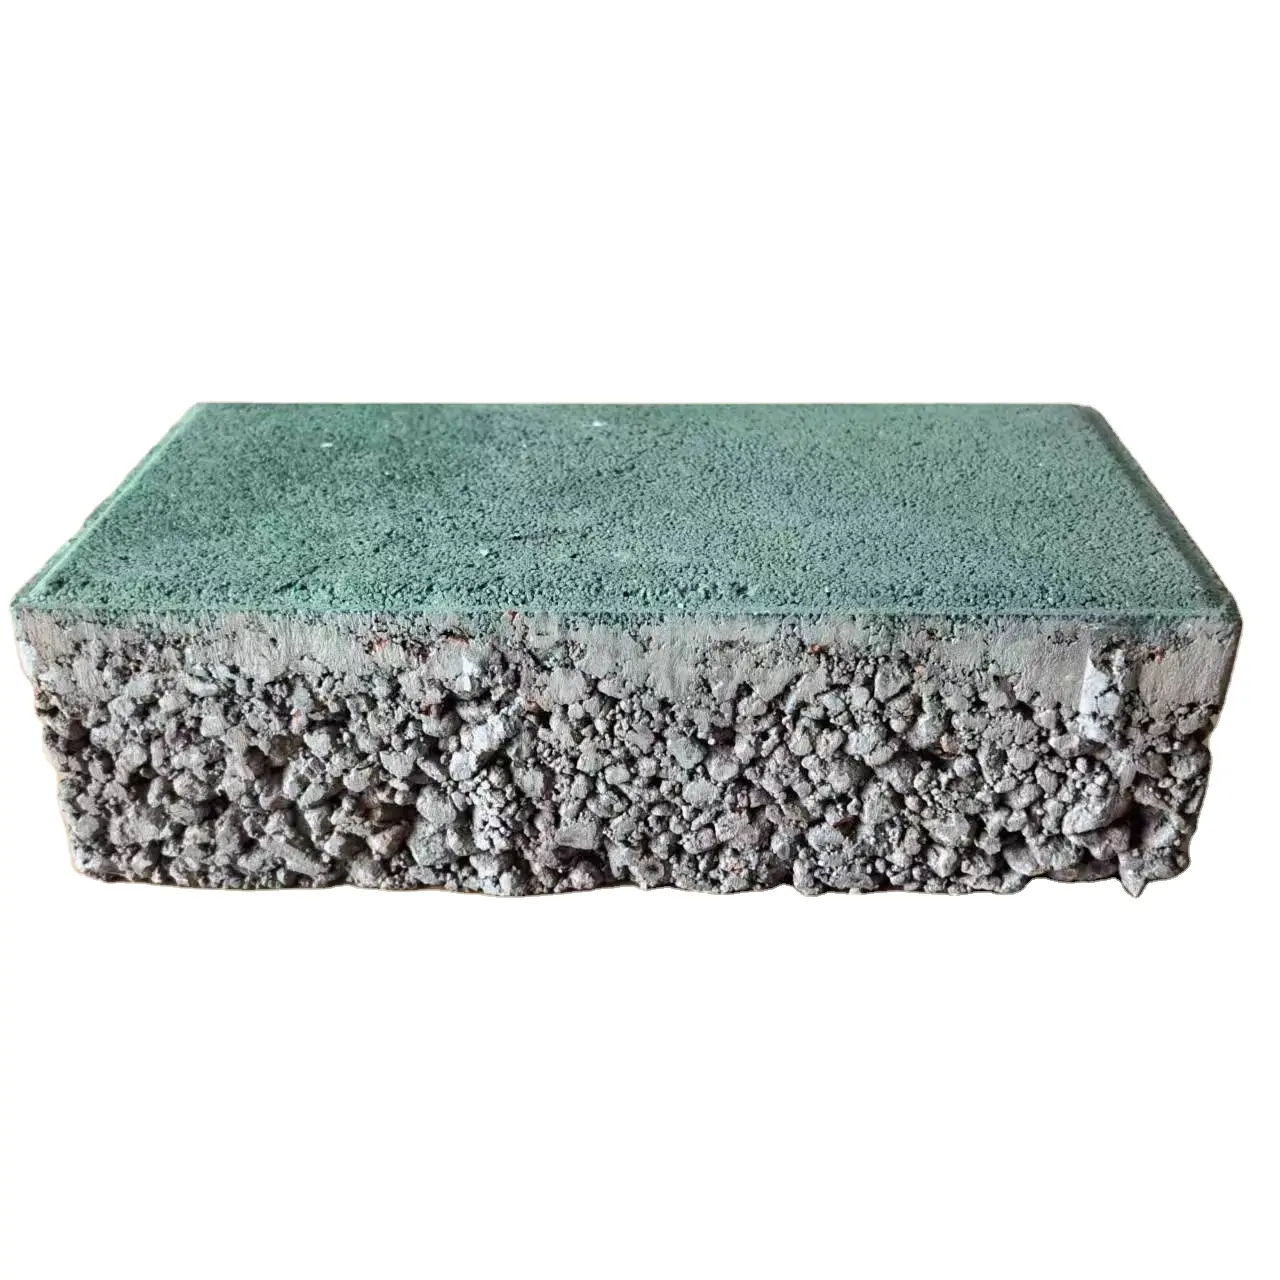 Multicolor Solid Quartz Sand Permeable Concrete Bricks Porous Type